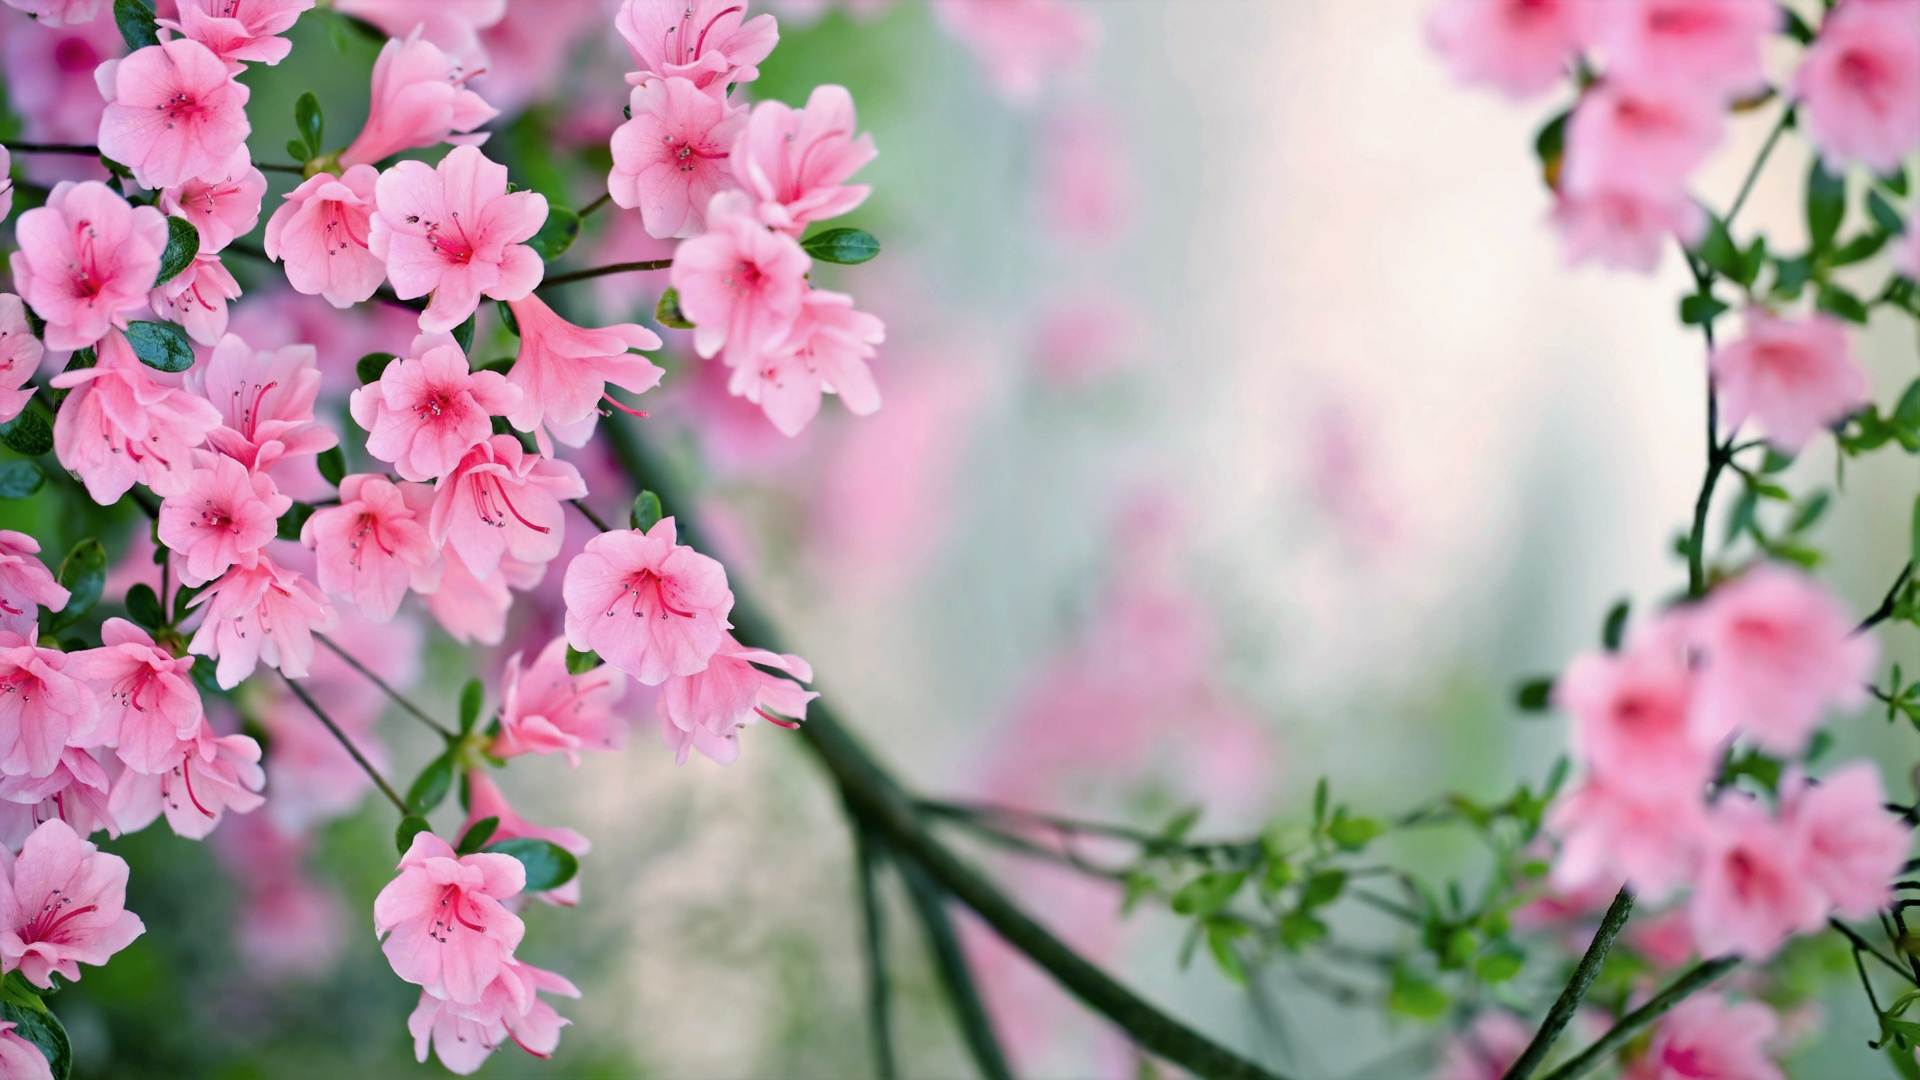 Mùa hoa Đào: Mùa xuân là khoảng thời gian tuyệt vời để chiêm ngưỡng vẻ đẹp của thiên nhiên. Hãy cùng khám phá vẻ đẹp ngọt ngào của mùa hoa đào, khi những cành hoa đào nở rộ tràn đầy sắc hồng tươi sáng và bung lụa trên khắp các con phố.